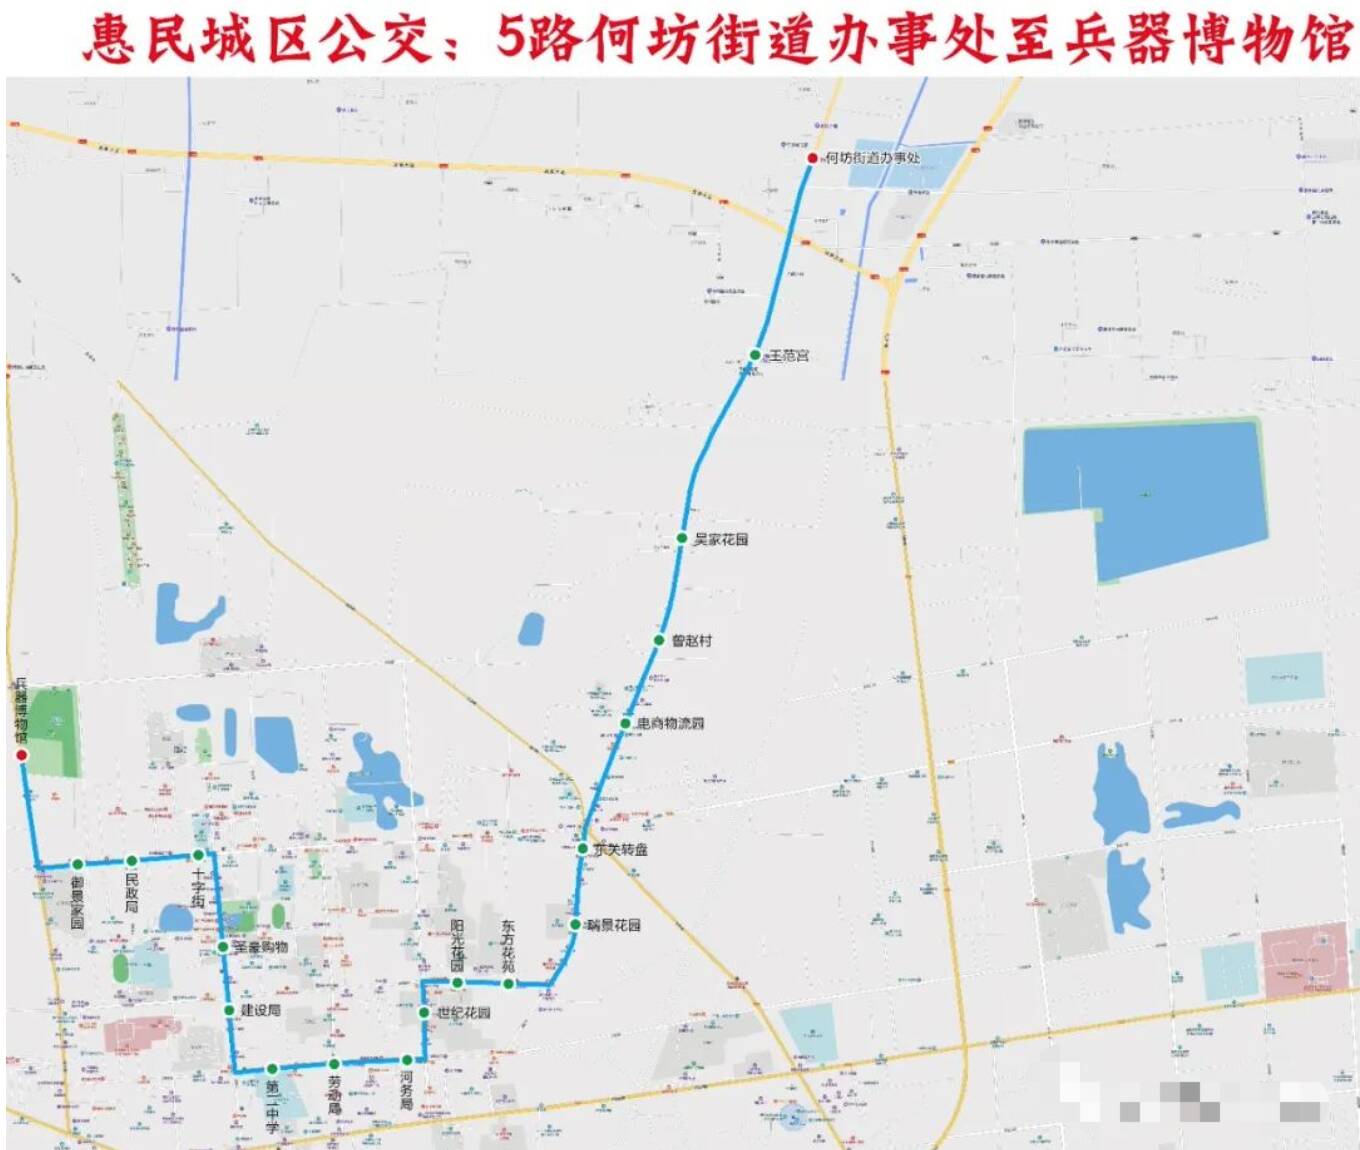 9月22日起惠民县城区5路公交线路进行优化调整